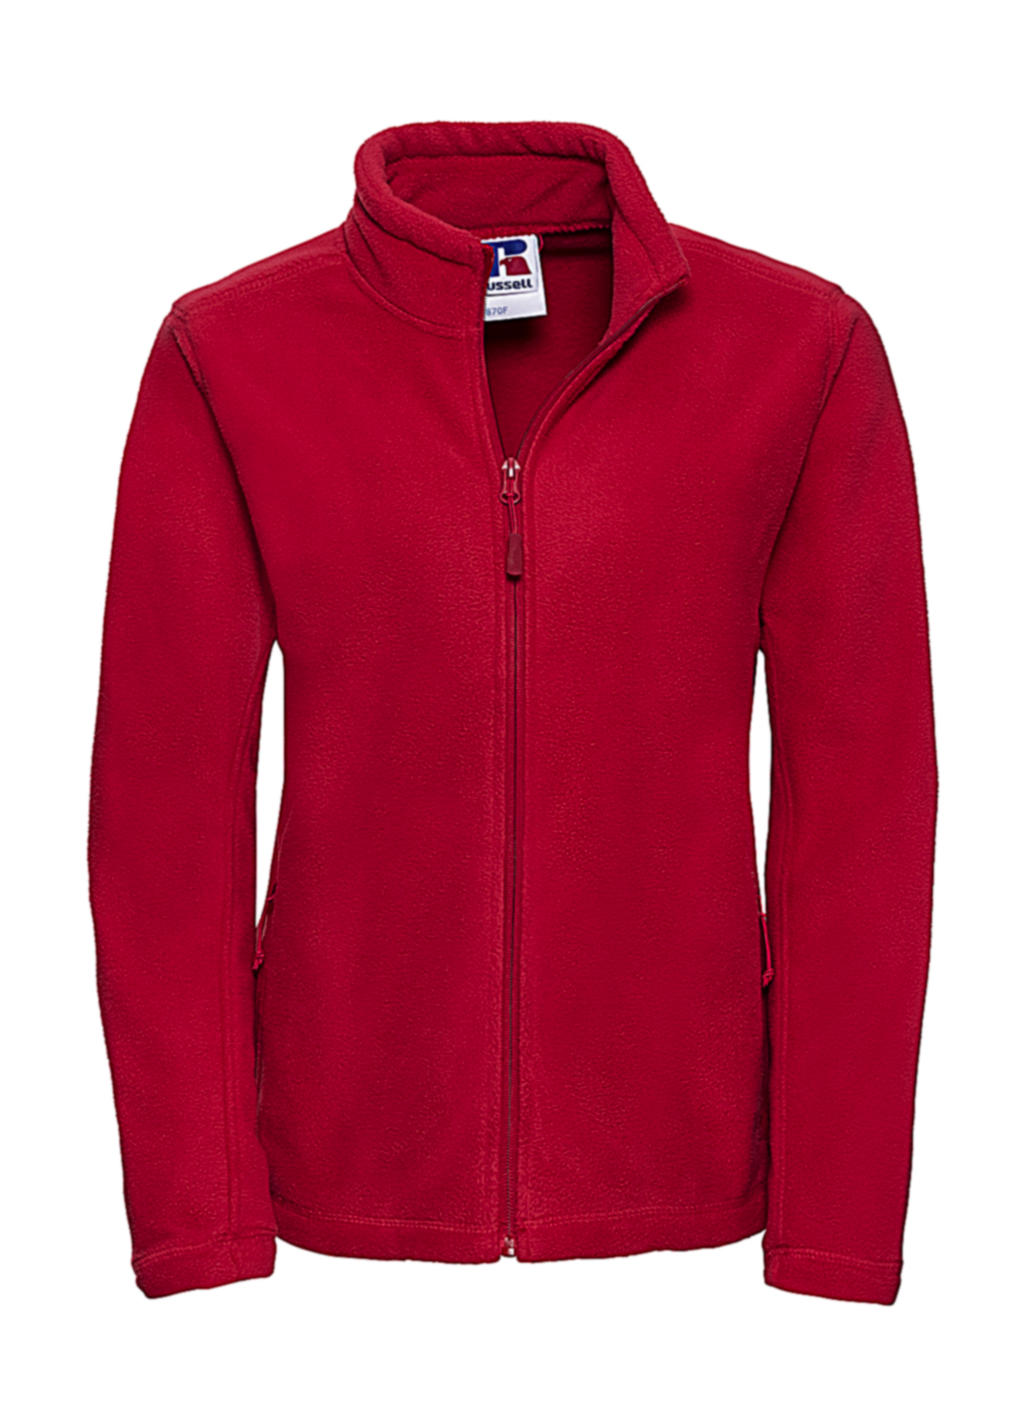  Ladies Full Zip Outdoor Fleece in Farbe Classic Red